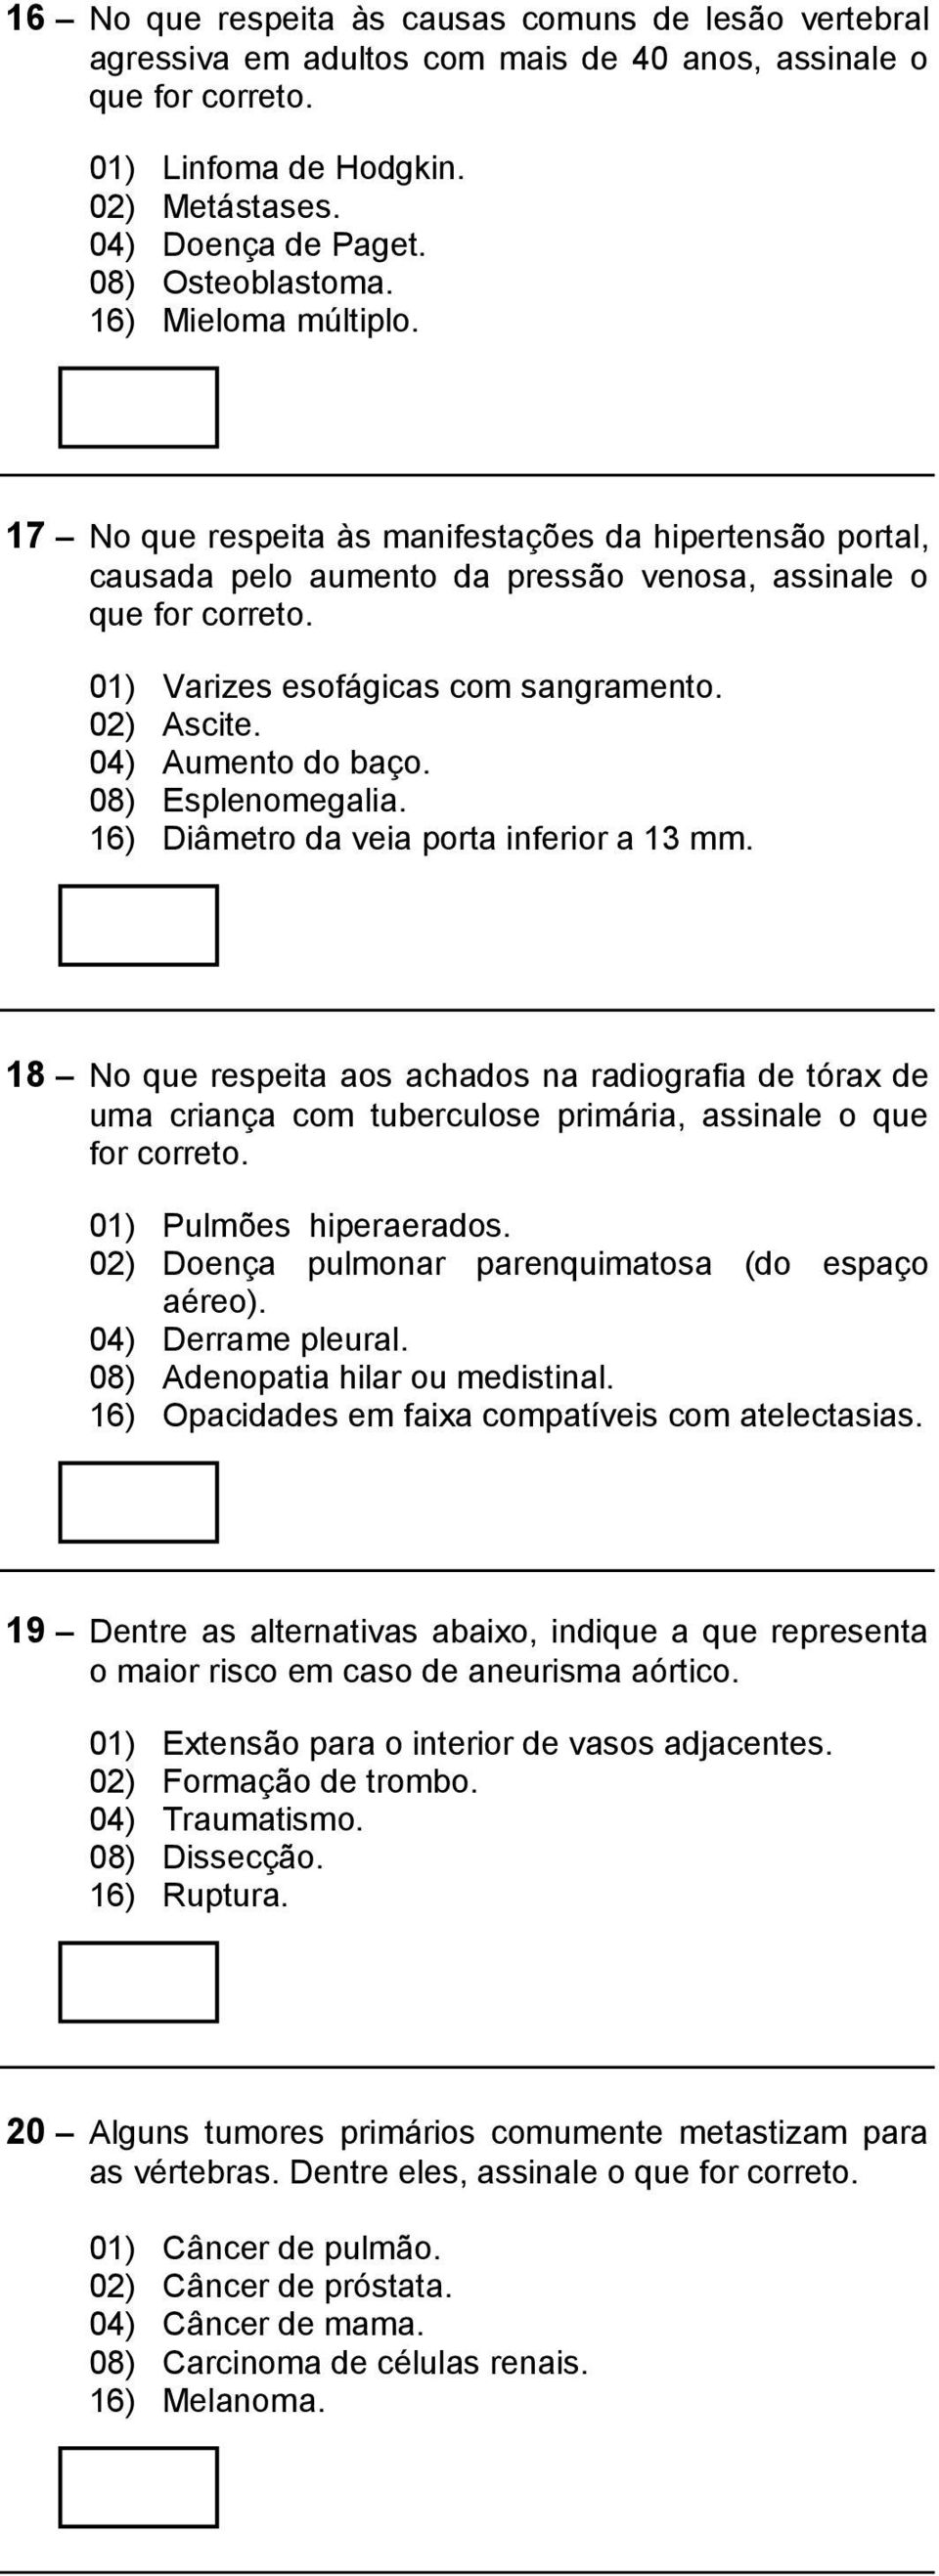 04) Aumento do baço. 08) Esplenomegalia. 16) Diâmetro da veia porta inferior a 13 mm.